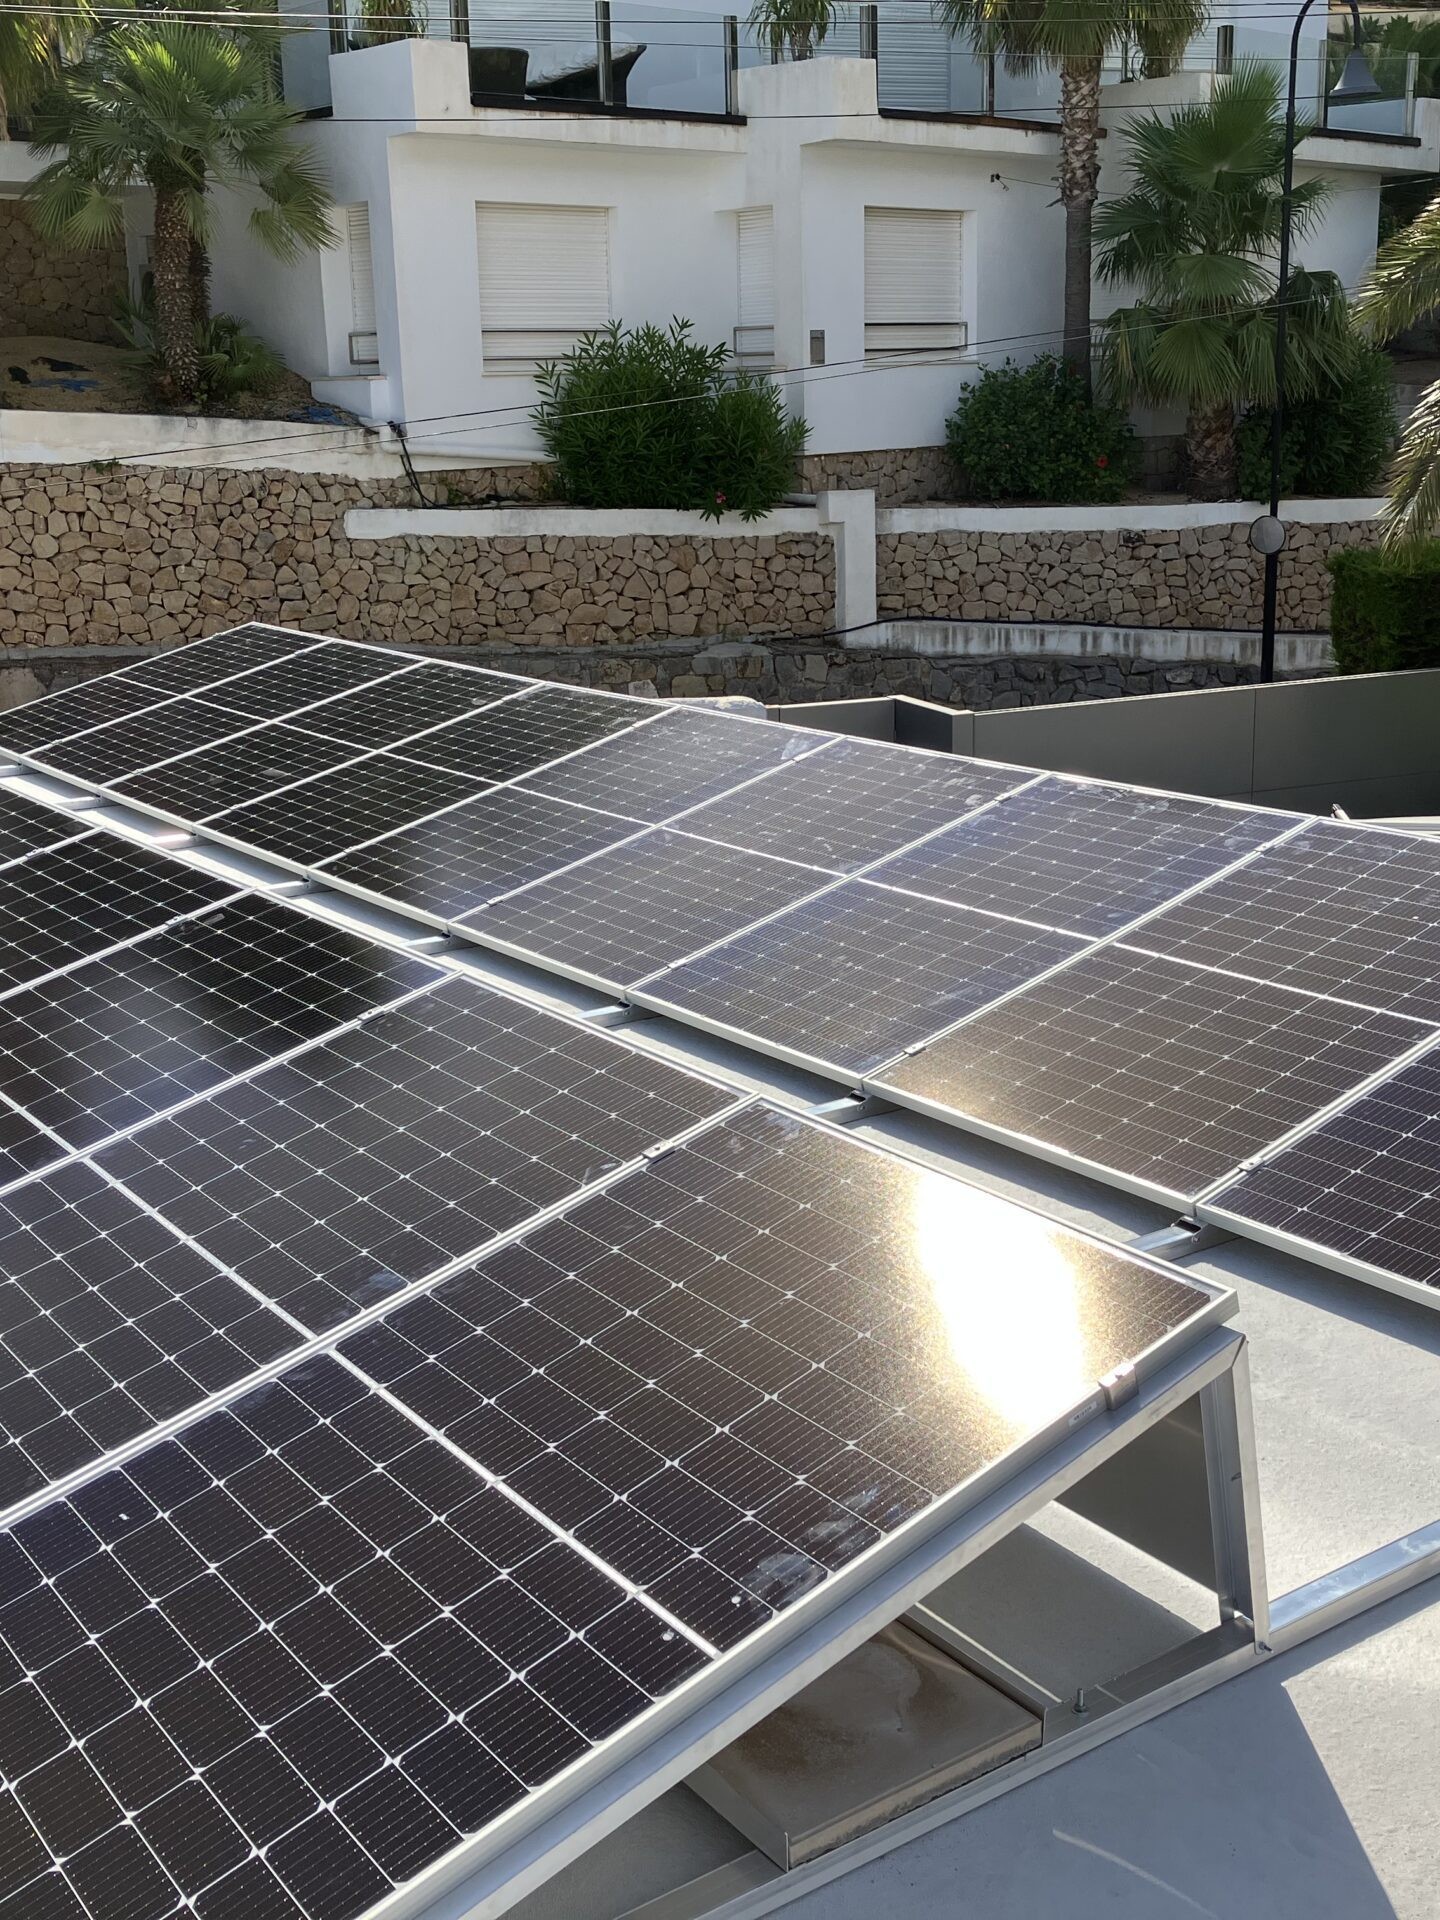 18x 385 wp Paneles Solares de JA, Altea, Alicante (Sistema híbrido)